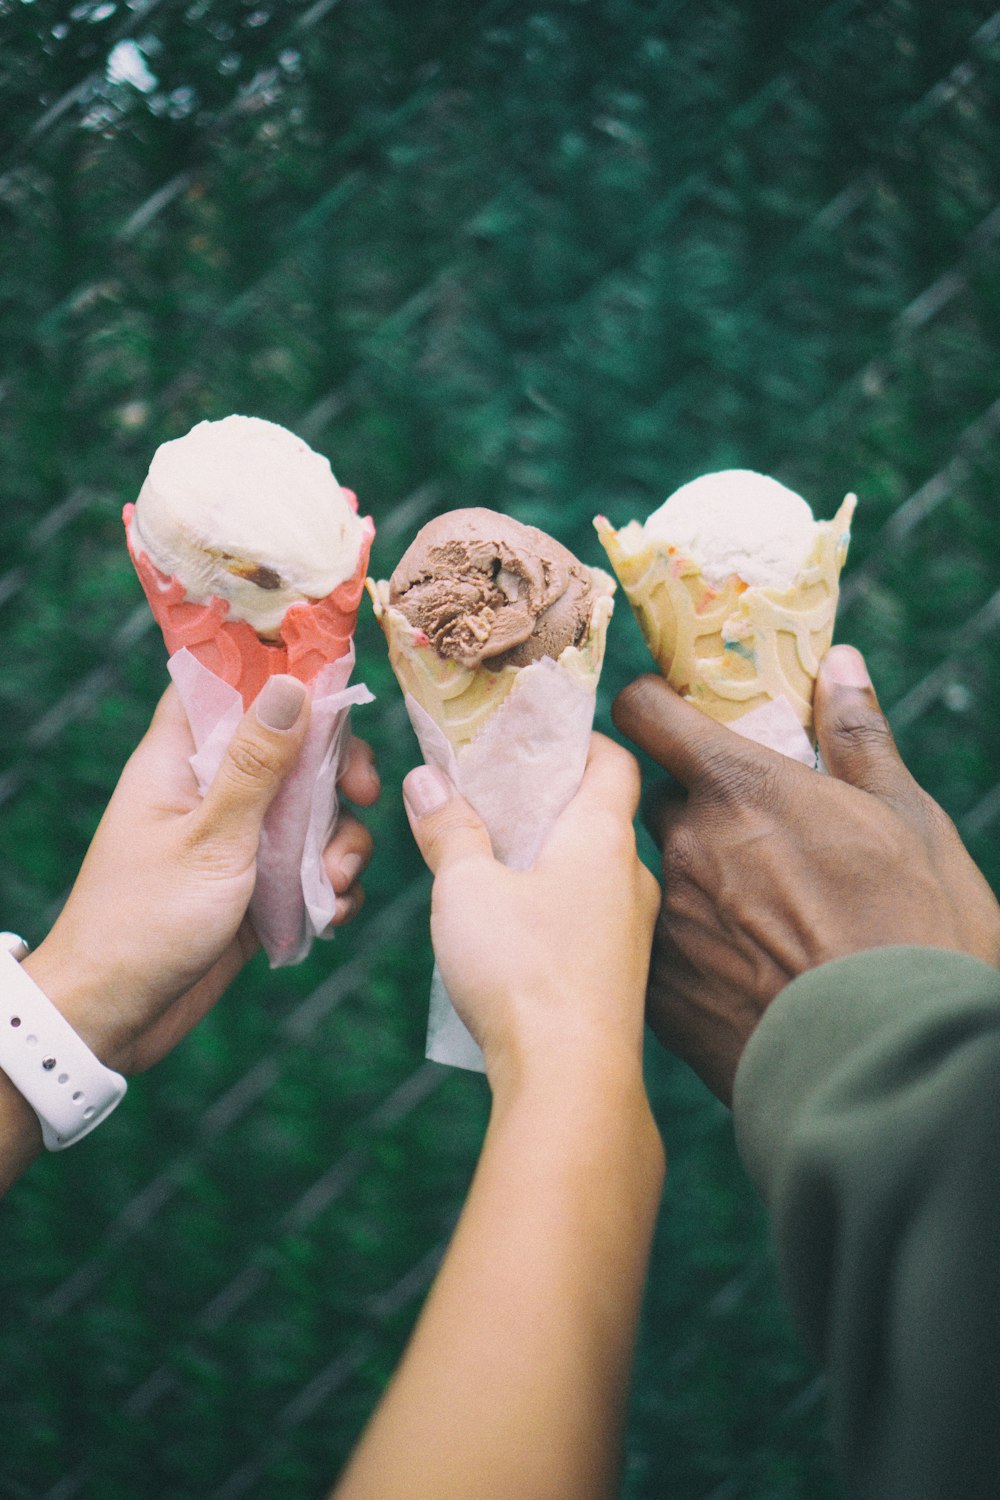 Tre persone che tengono i coni gelato nelle loro mani